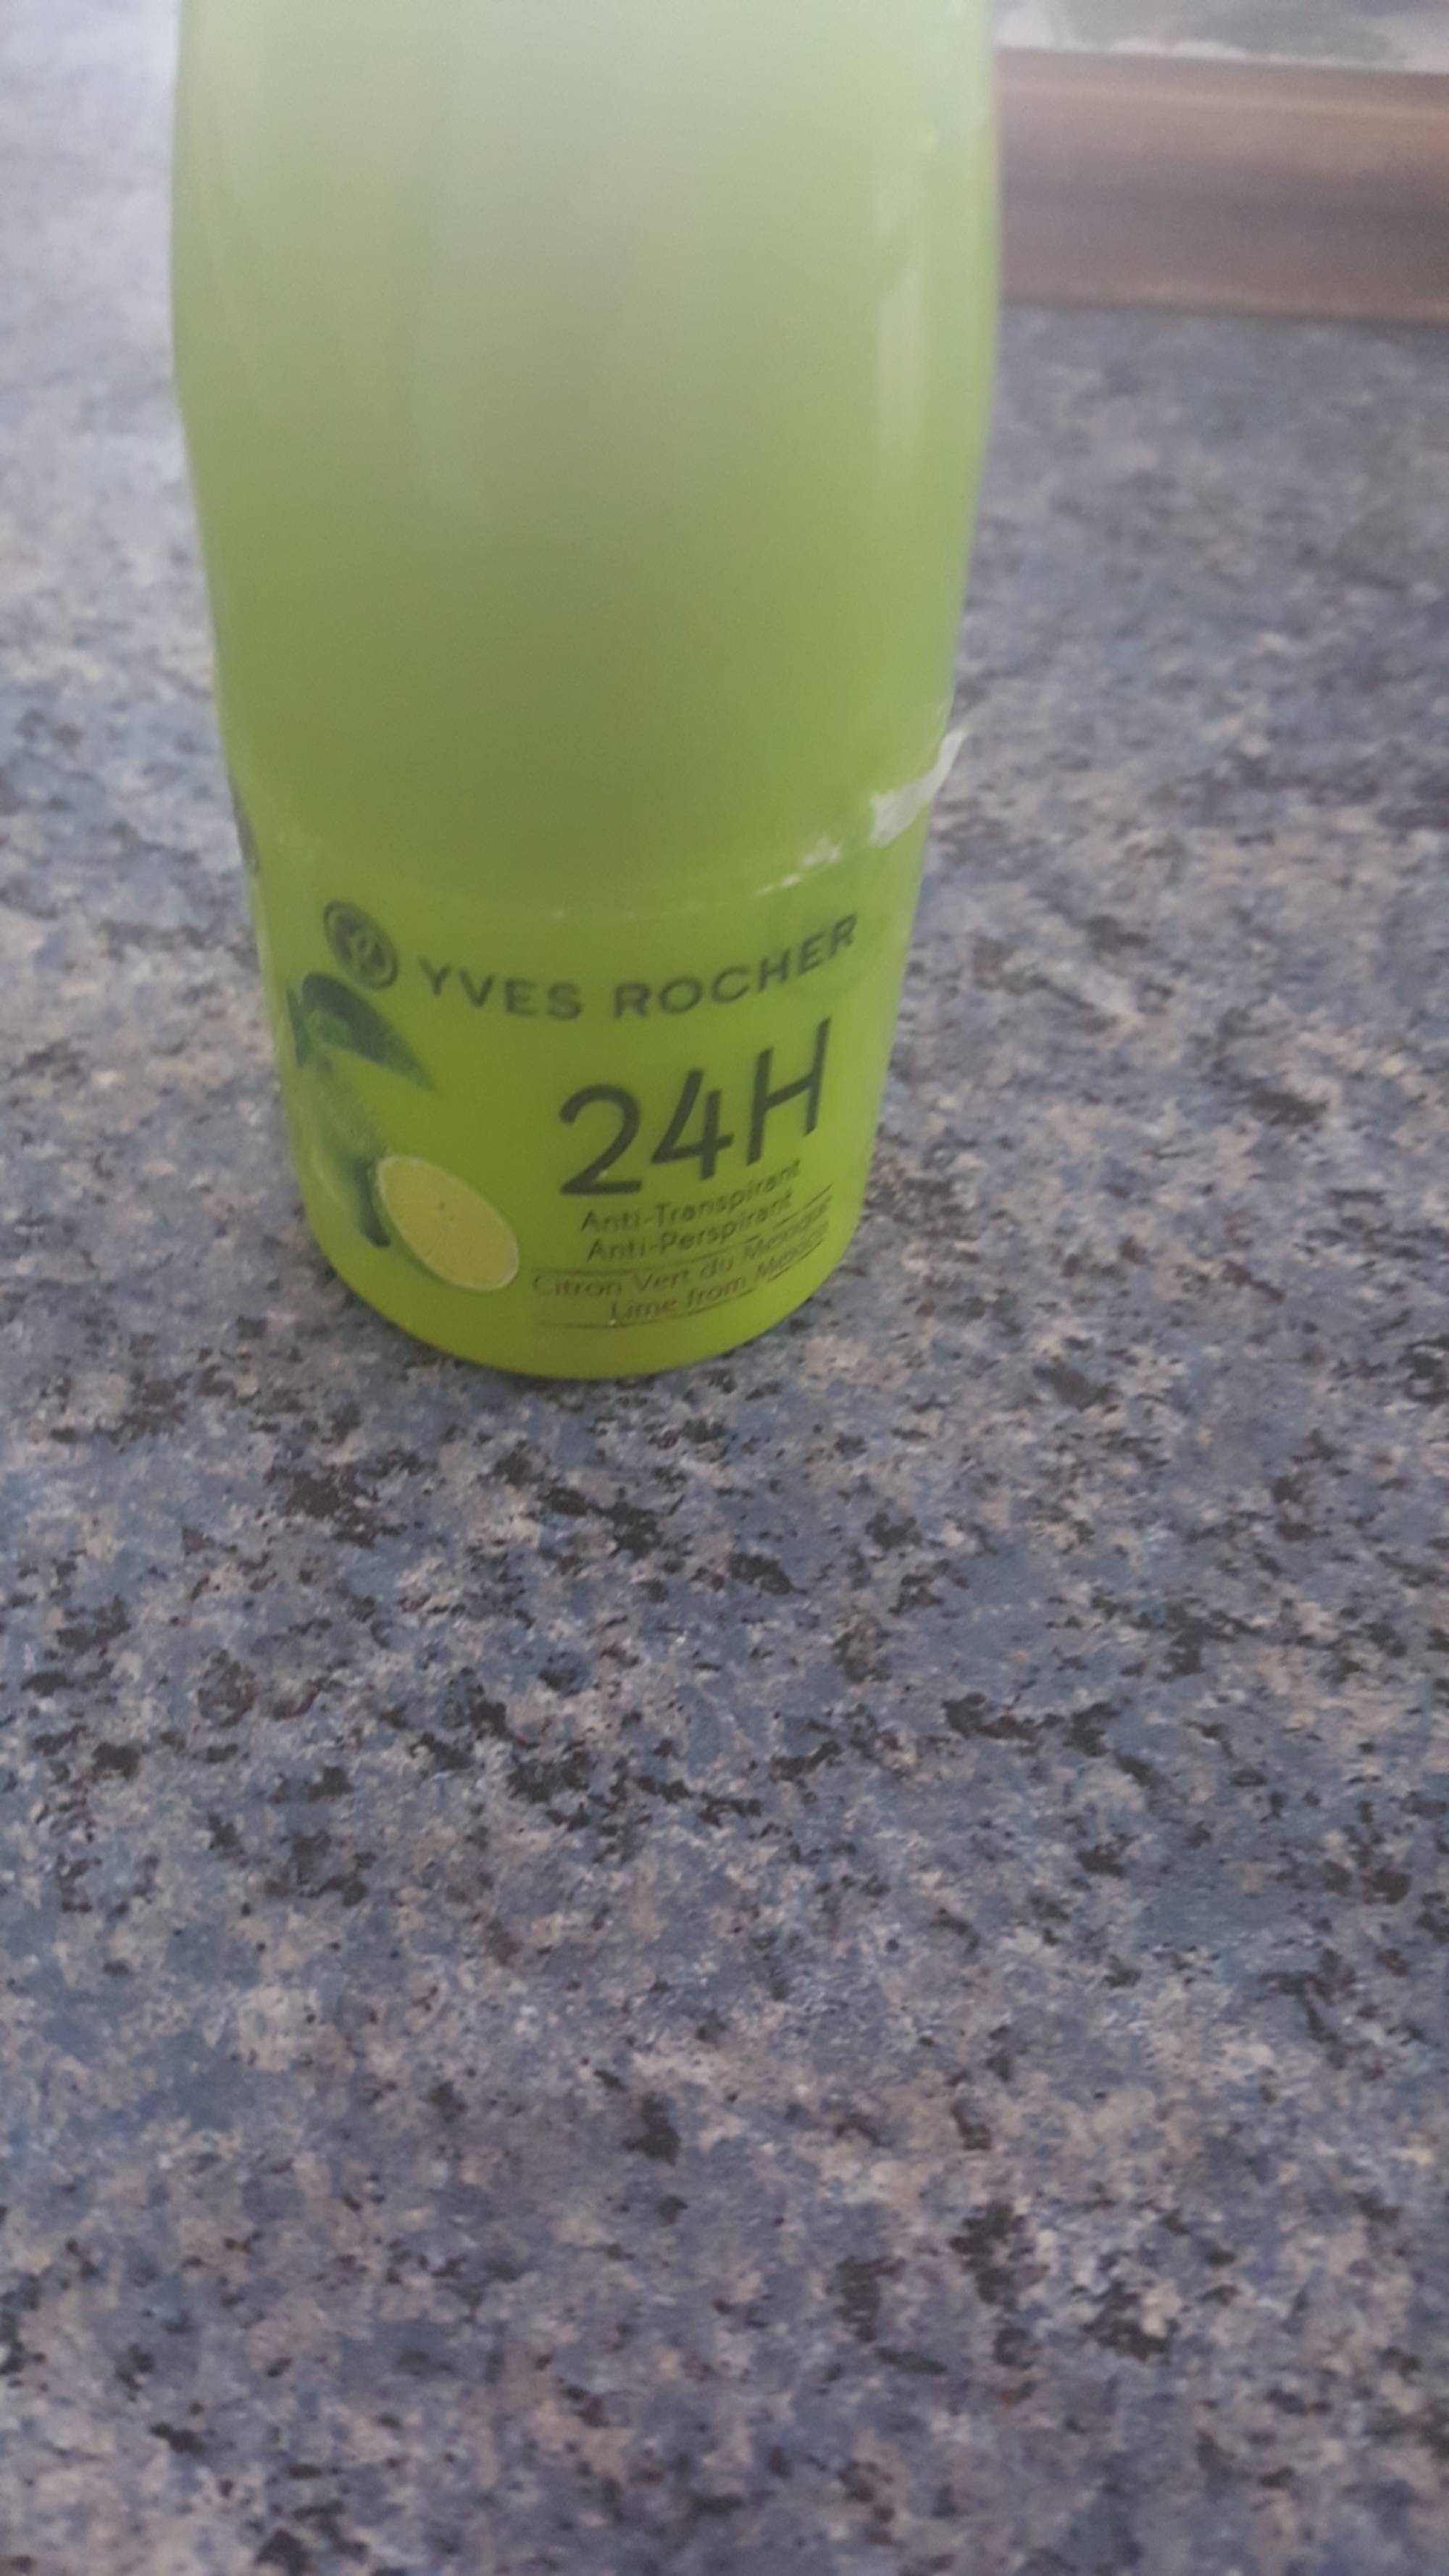 YVES ROCHER - Anti-transpirant 24h citron vert du mexique